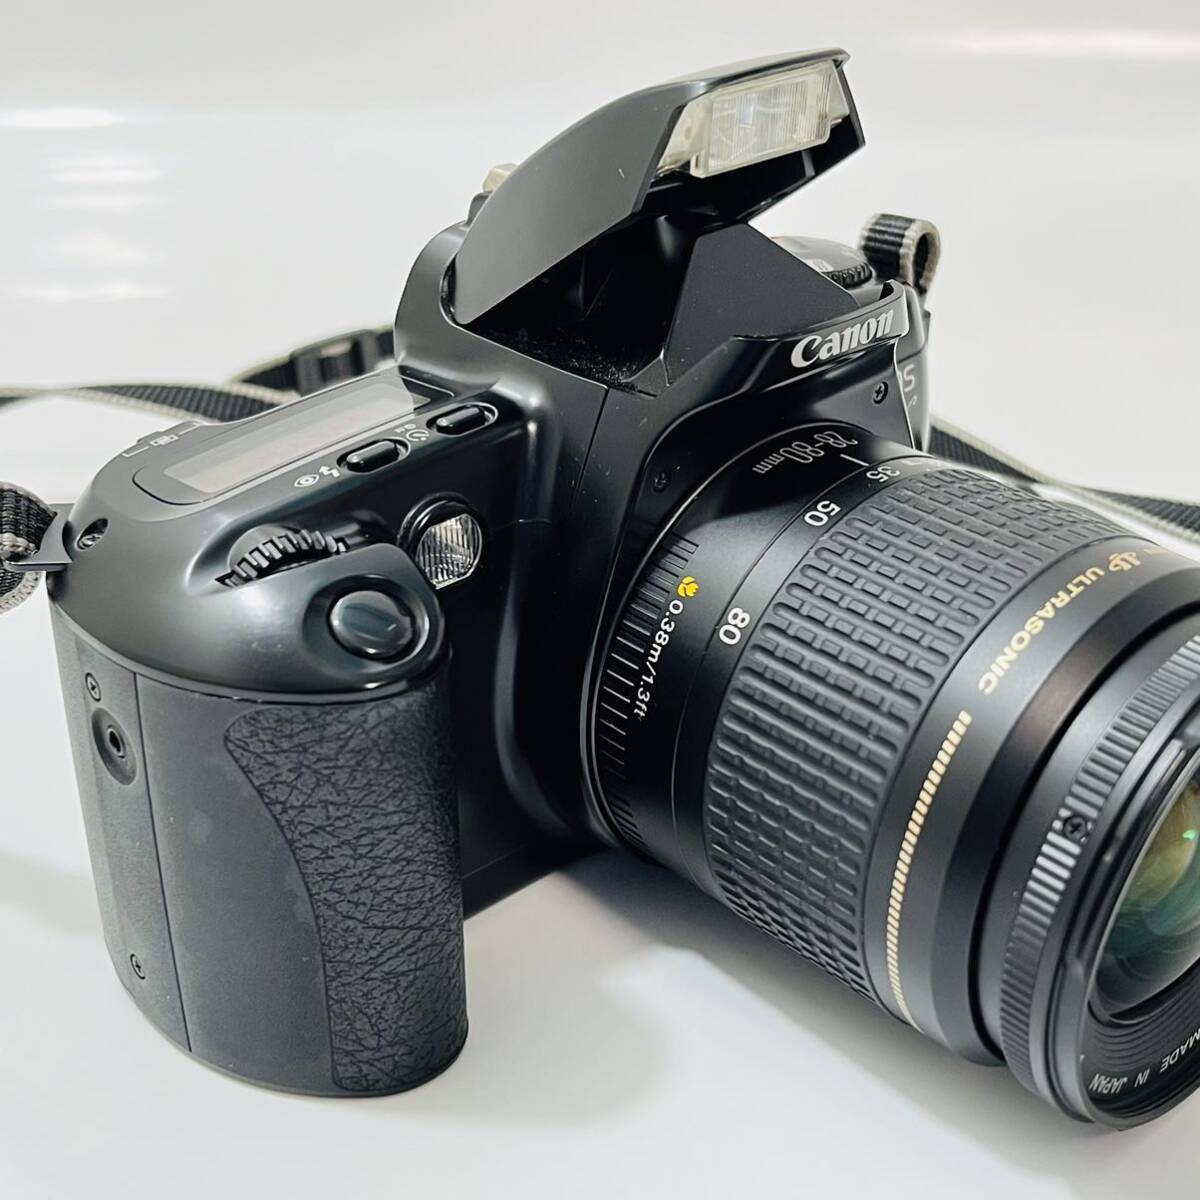 Canonフィルムカメラ EOS Kiss イオス キス キャノン レンズ ULTRASONIC 0.38m/1.3ft AF 28-80mmの画像2